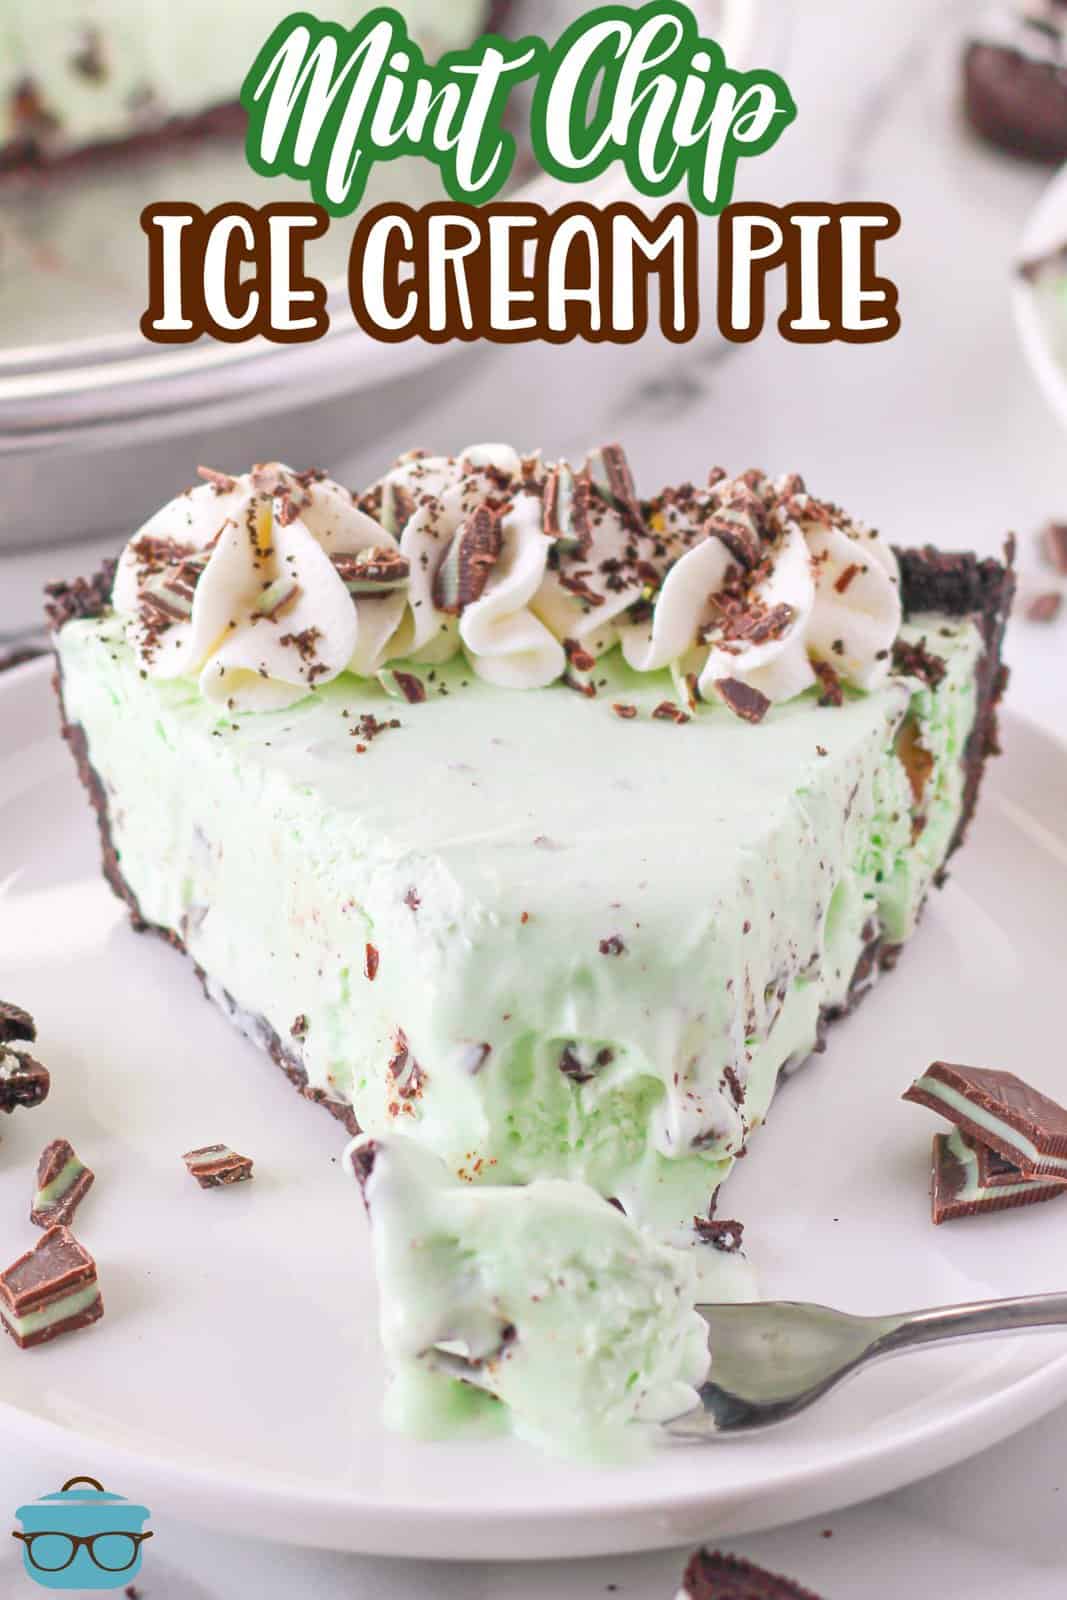 Immagine Pinterest di Mint Chip Ice Cream Pie su piatto bianco con morso tolto da esso.